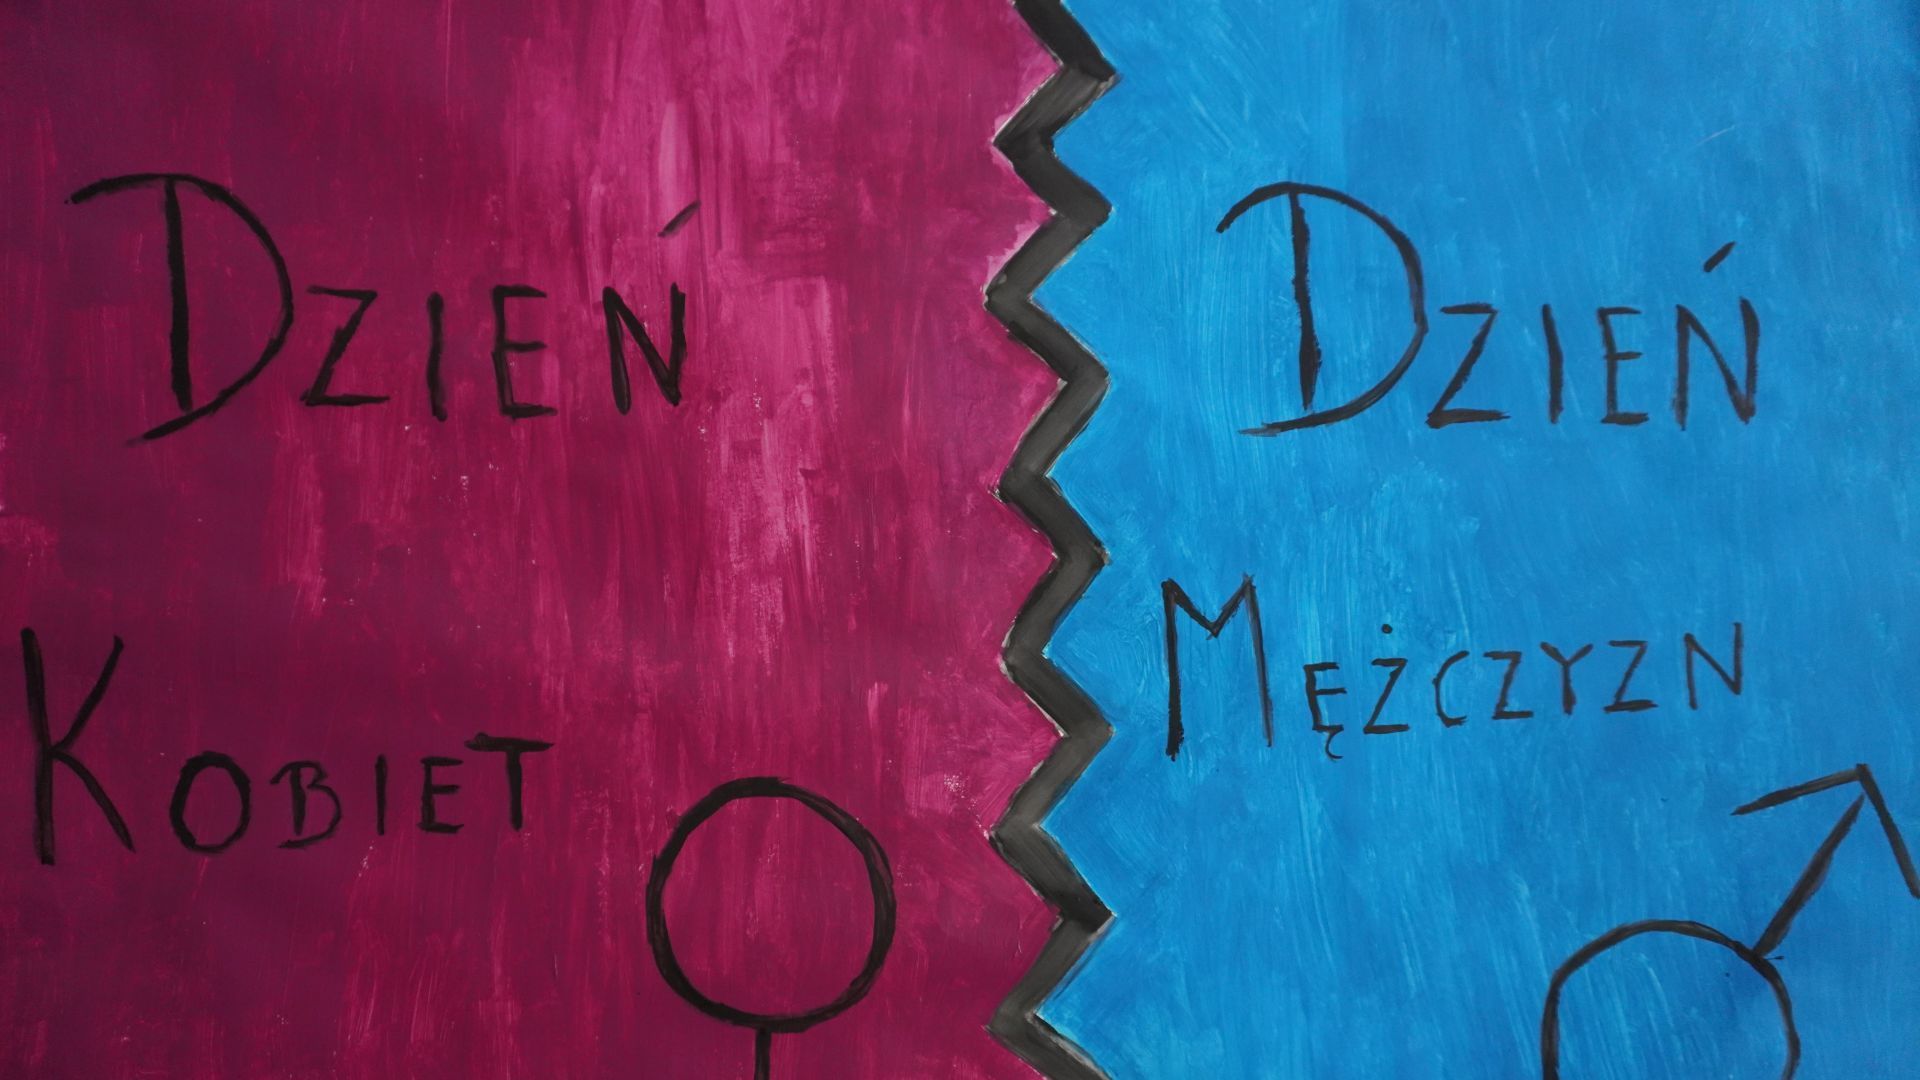 Galeria: Plakat przedstawiający napis Dzień Kobiet i Dzień Mężczyzn na różowo-niebieskim tle.